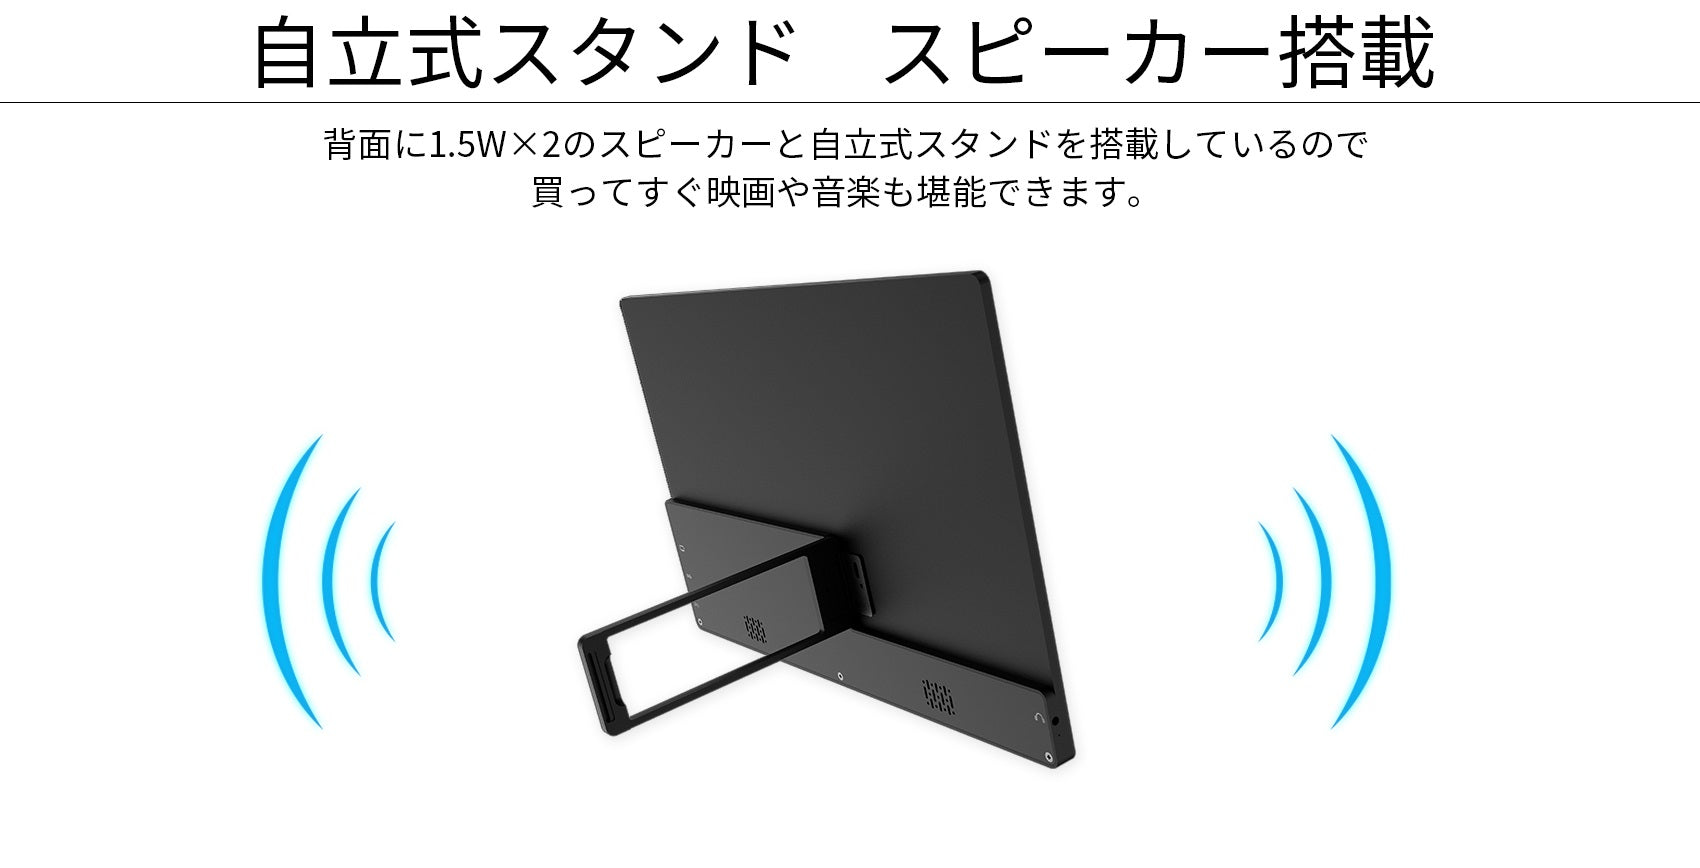 JAPANNext モバイルモニター13.3型 美品